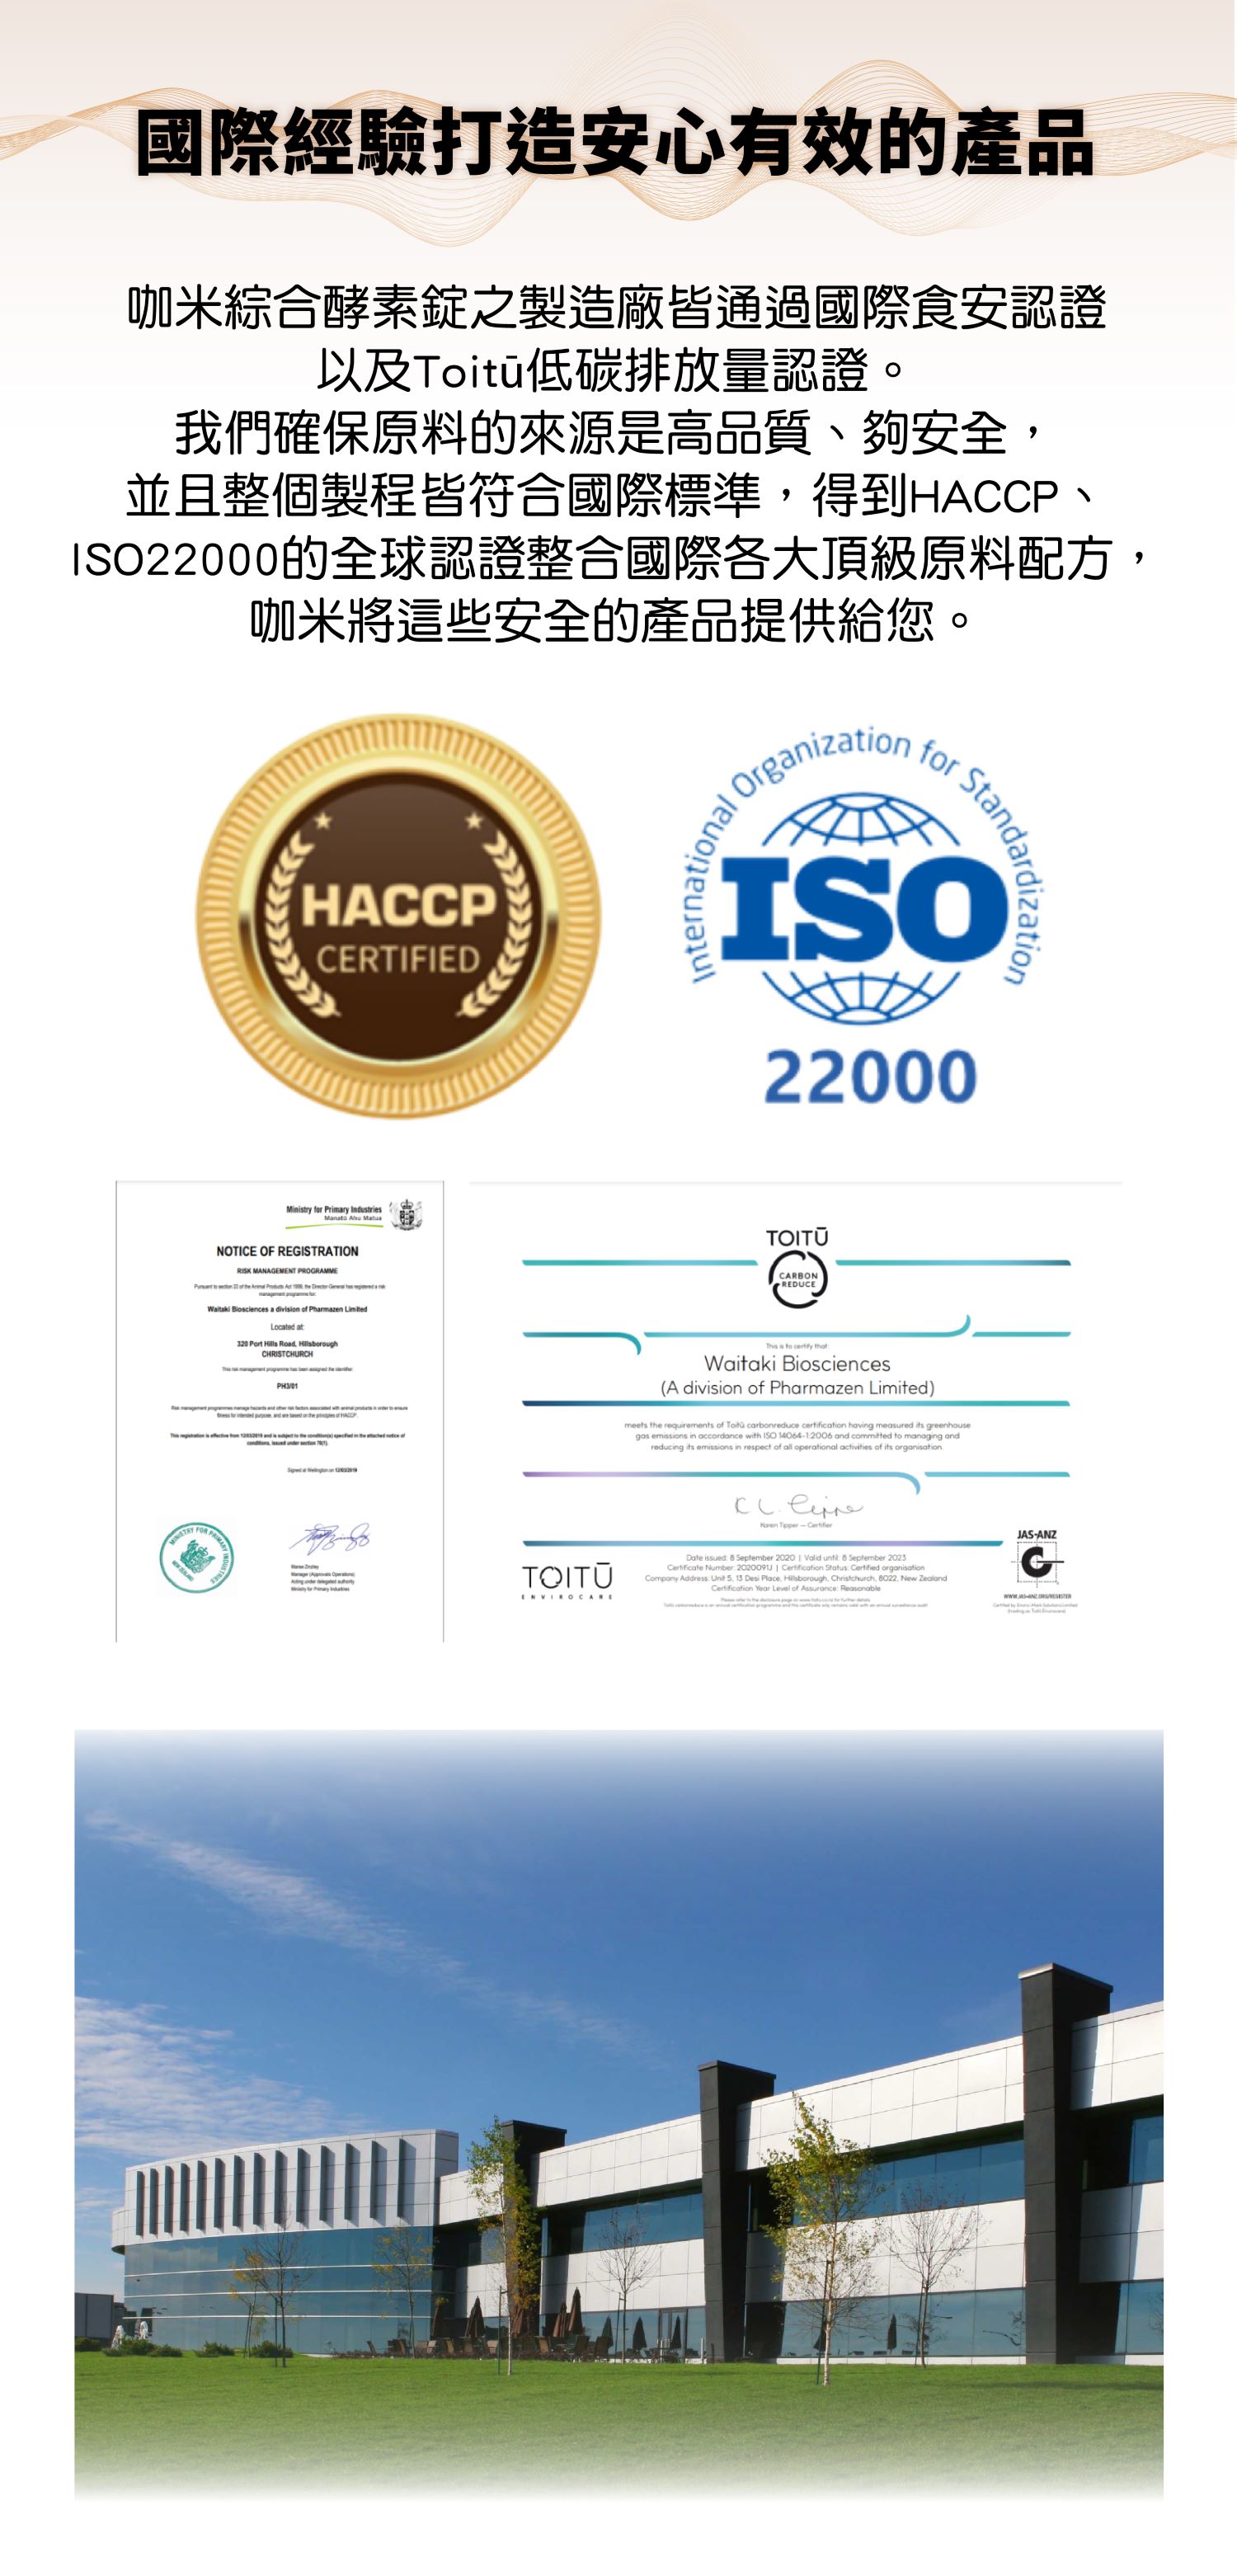 【國際經驗打造安心有效的產品】   咖米綜合酵素錠之製造廠皆通過國際食安認證以及Toitū低碳排放量認證。我們確保原料的來源是高品質、夠安全，並且整個製程皆符合國際標準，得到HACCP、ISO22000的全球認證整合國際各大頂級原料配方，咖米將這些安全的產品提供給您。 